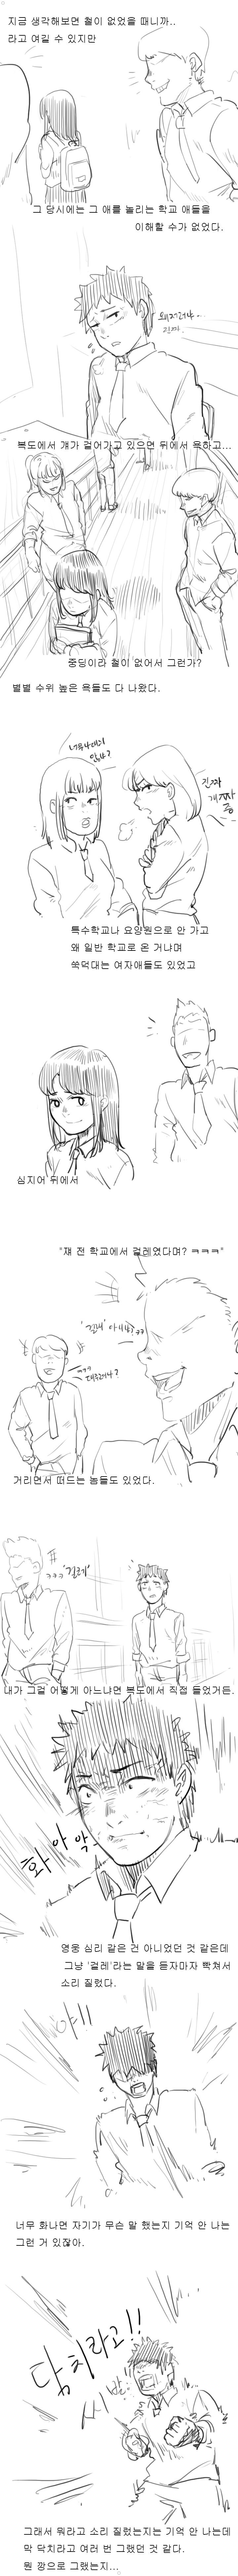 추억의 청각장애인 처자애랑 짝이었던 썰만화 ㅎㅎㅎㅎㅎ 이미지 #5